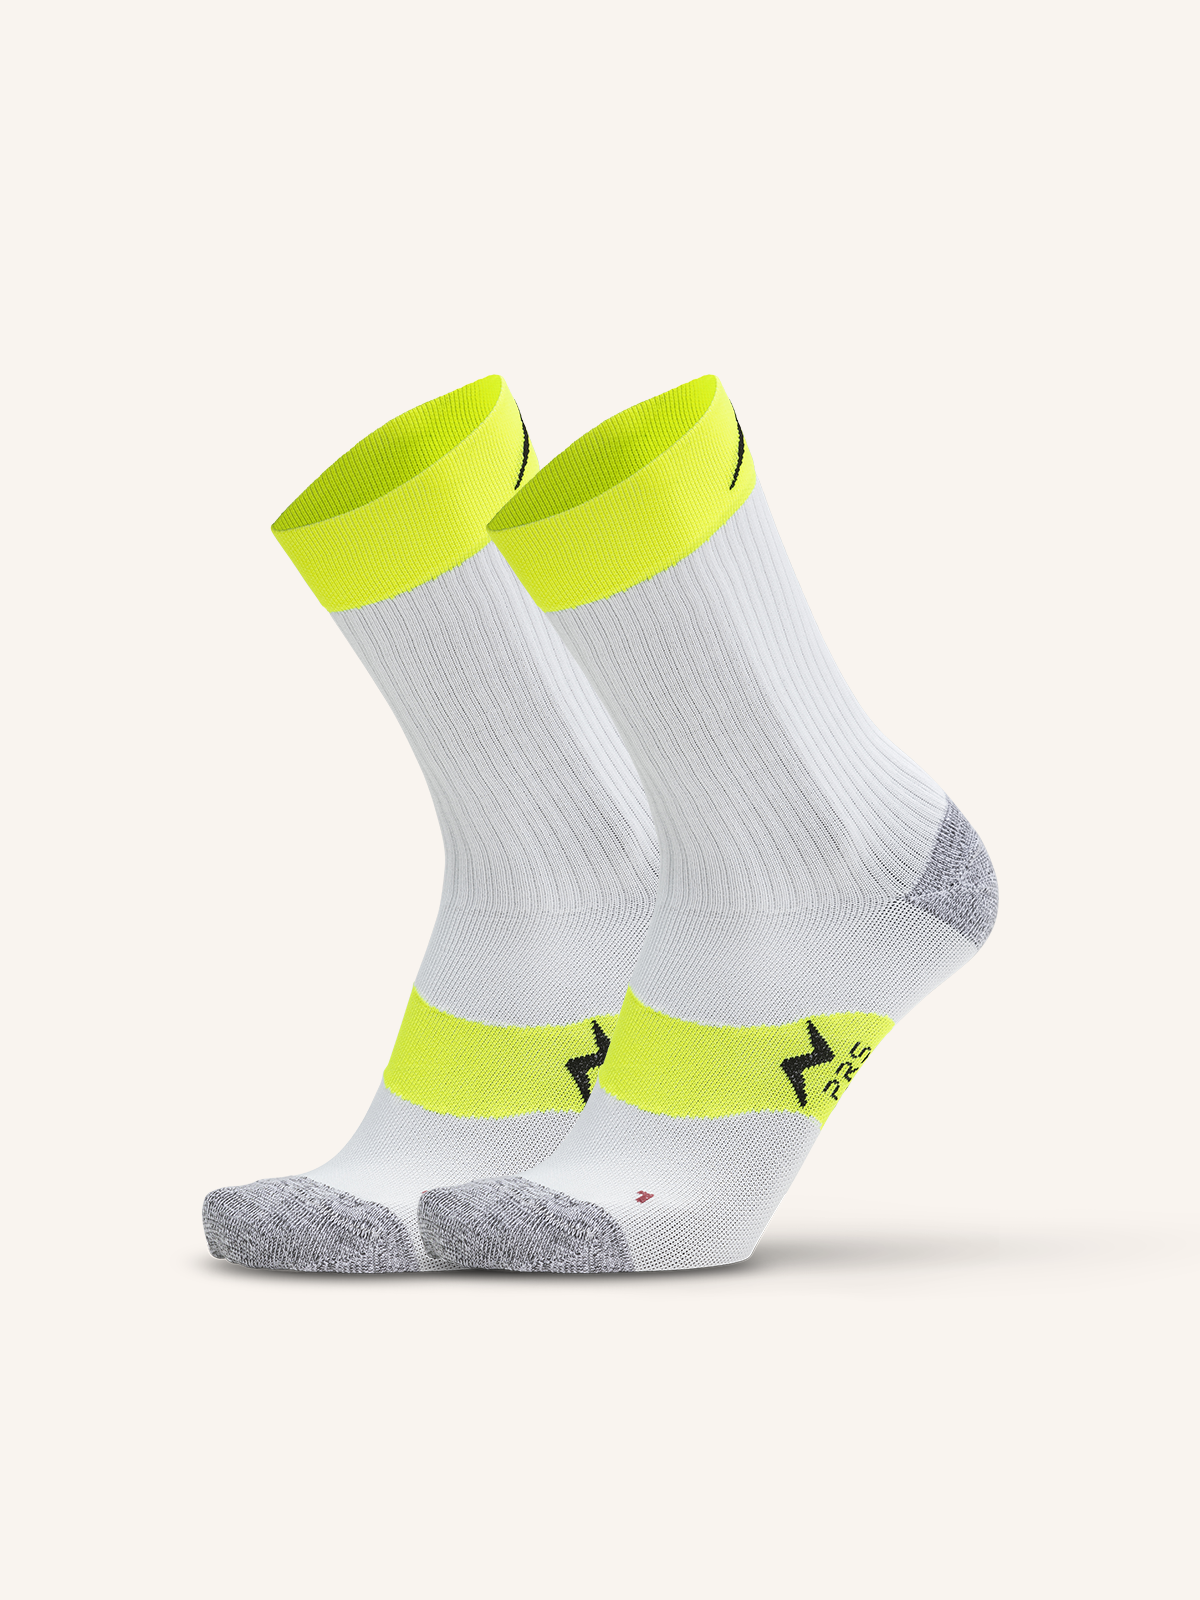 Short Dryarn Sock for Men's Running | Plain Color | Pack of 2 Pairs | PRS PRO 02